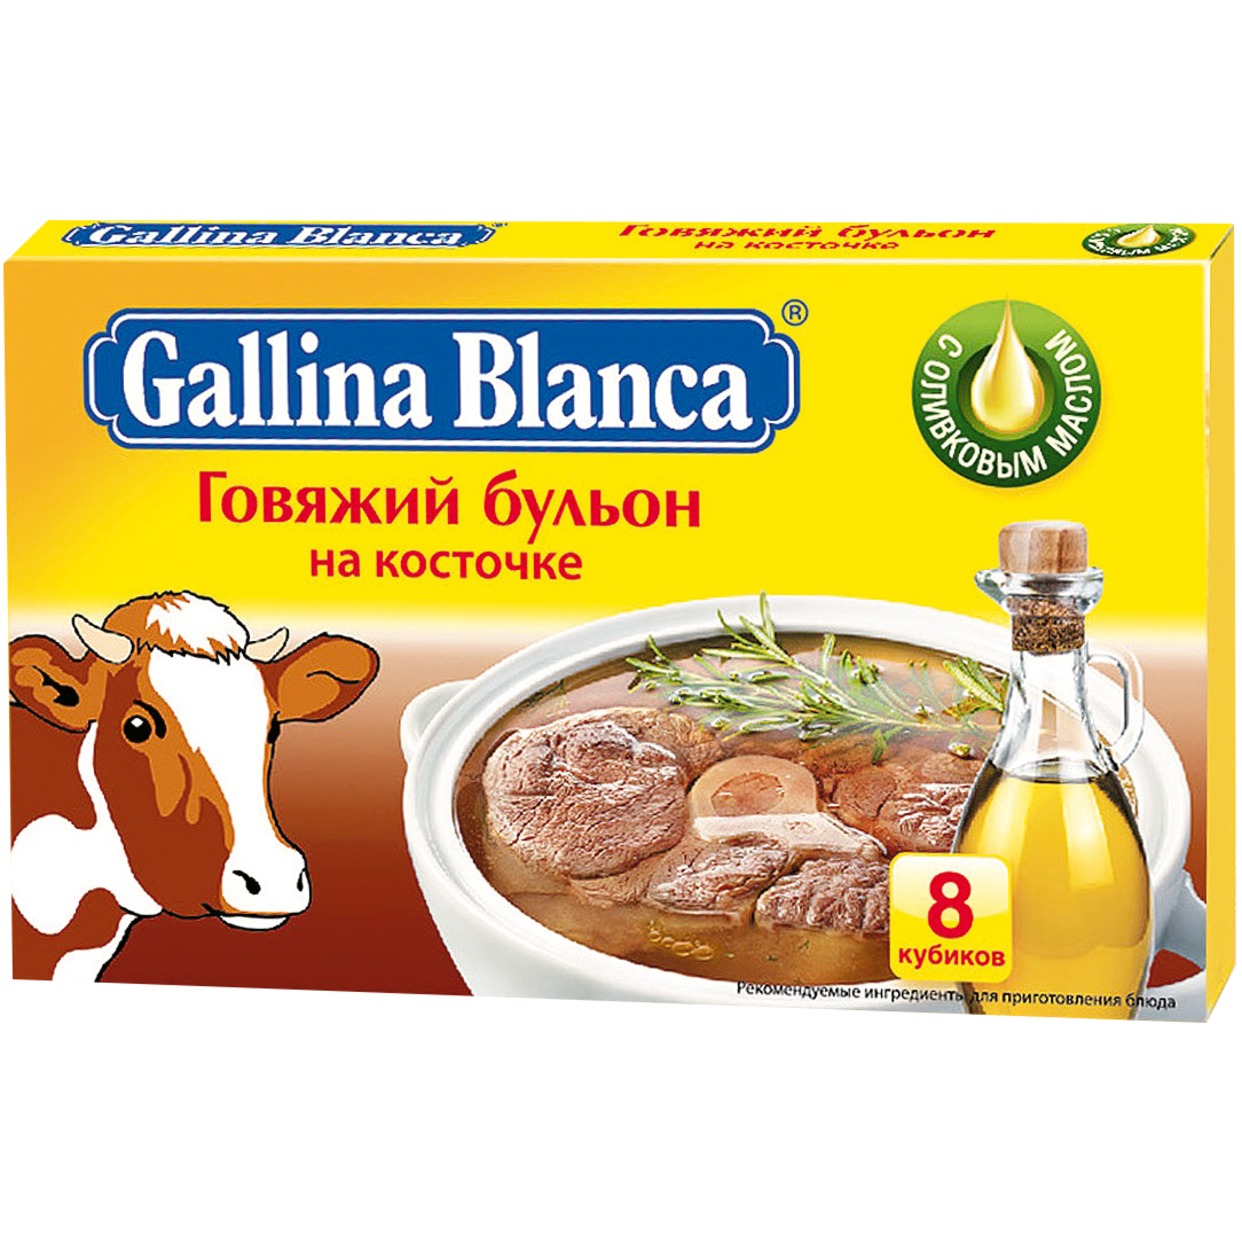 Бульон Gallina Blanca говяжий на косточке 8 шт.*10 г по акции в Пятерочке